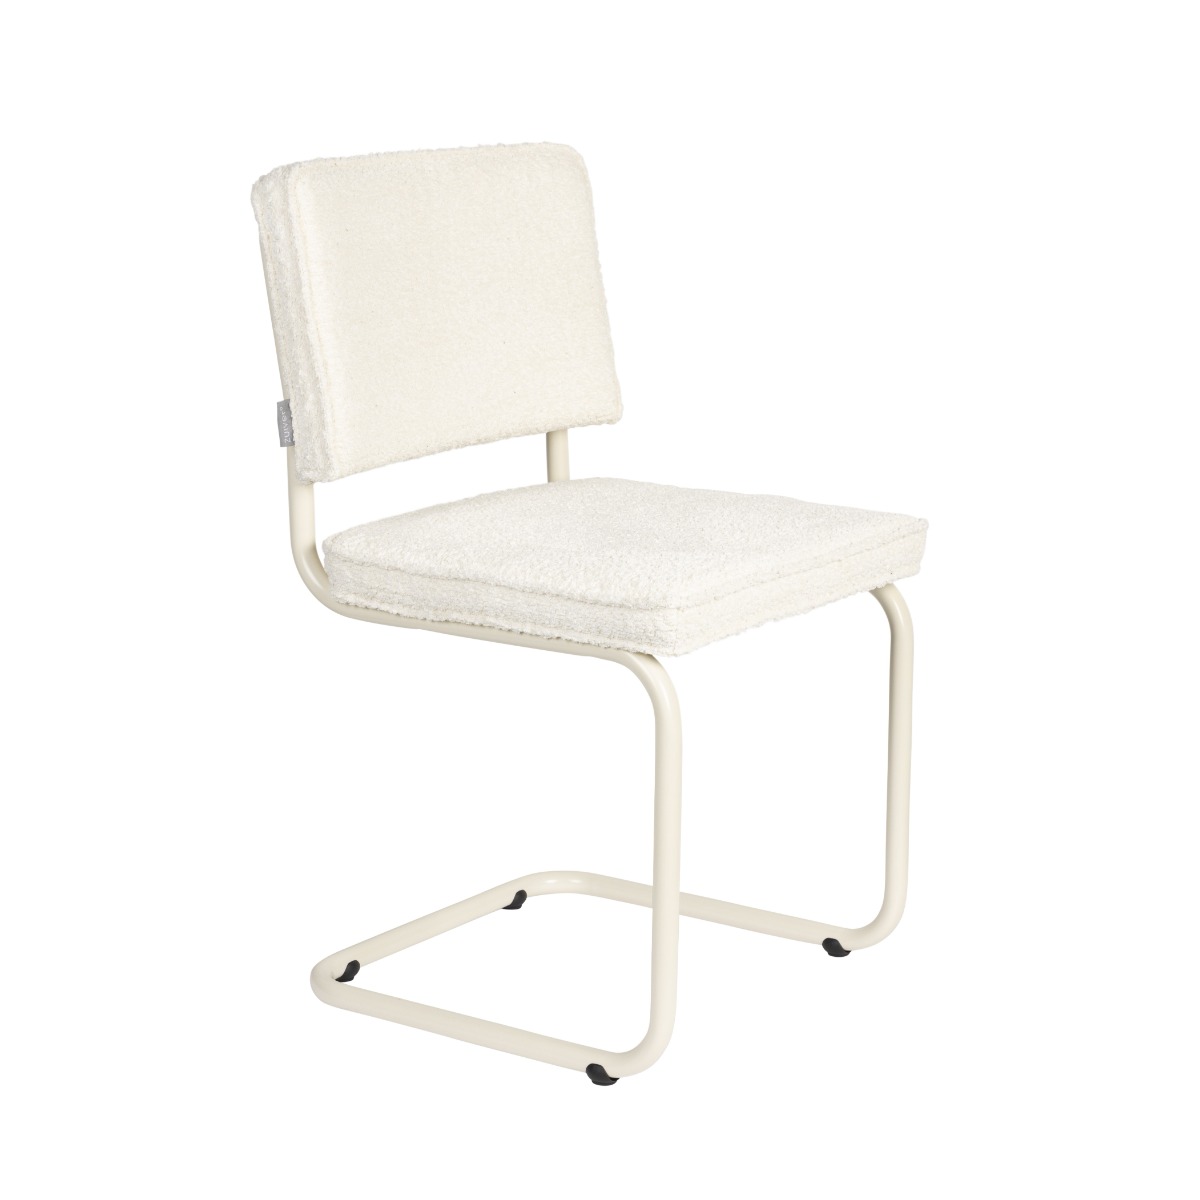 Ridge Soft Chair in White